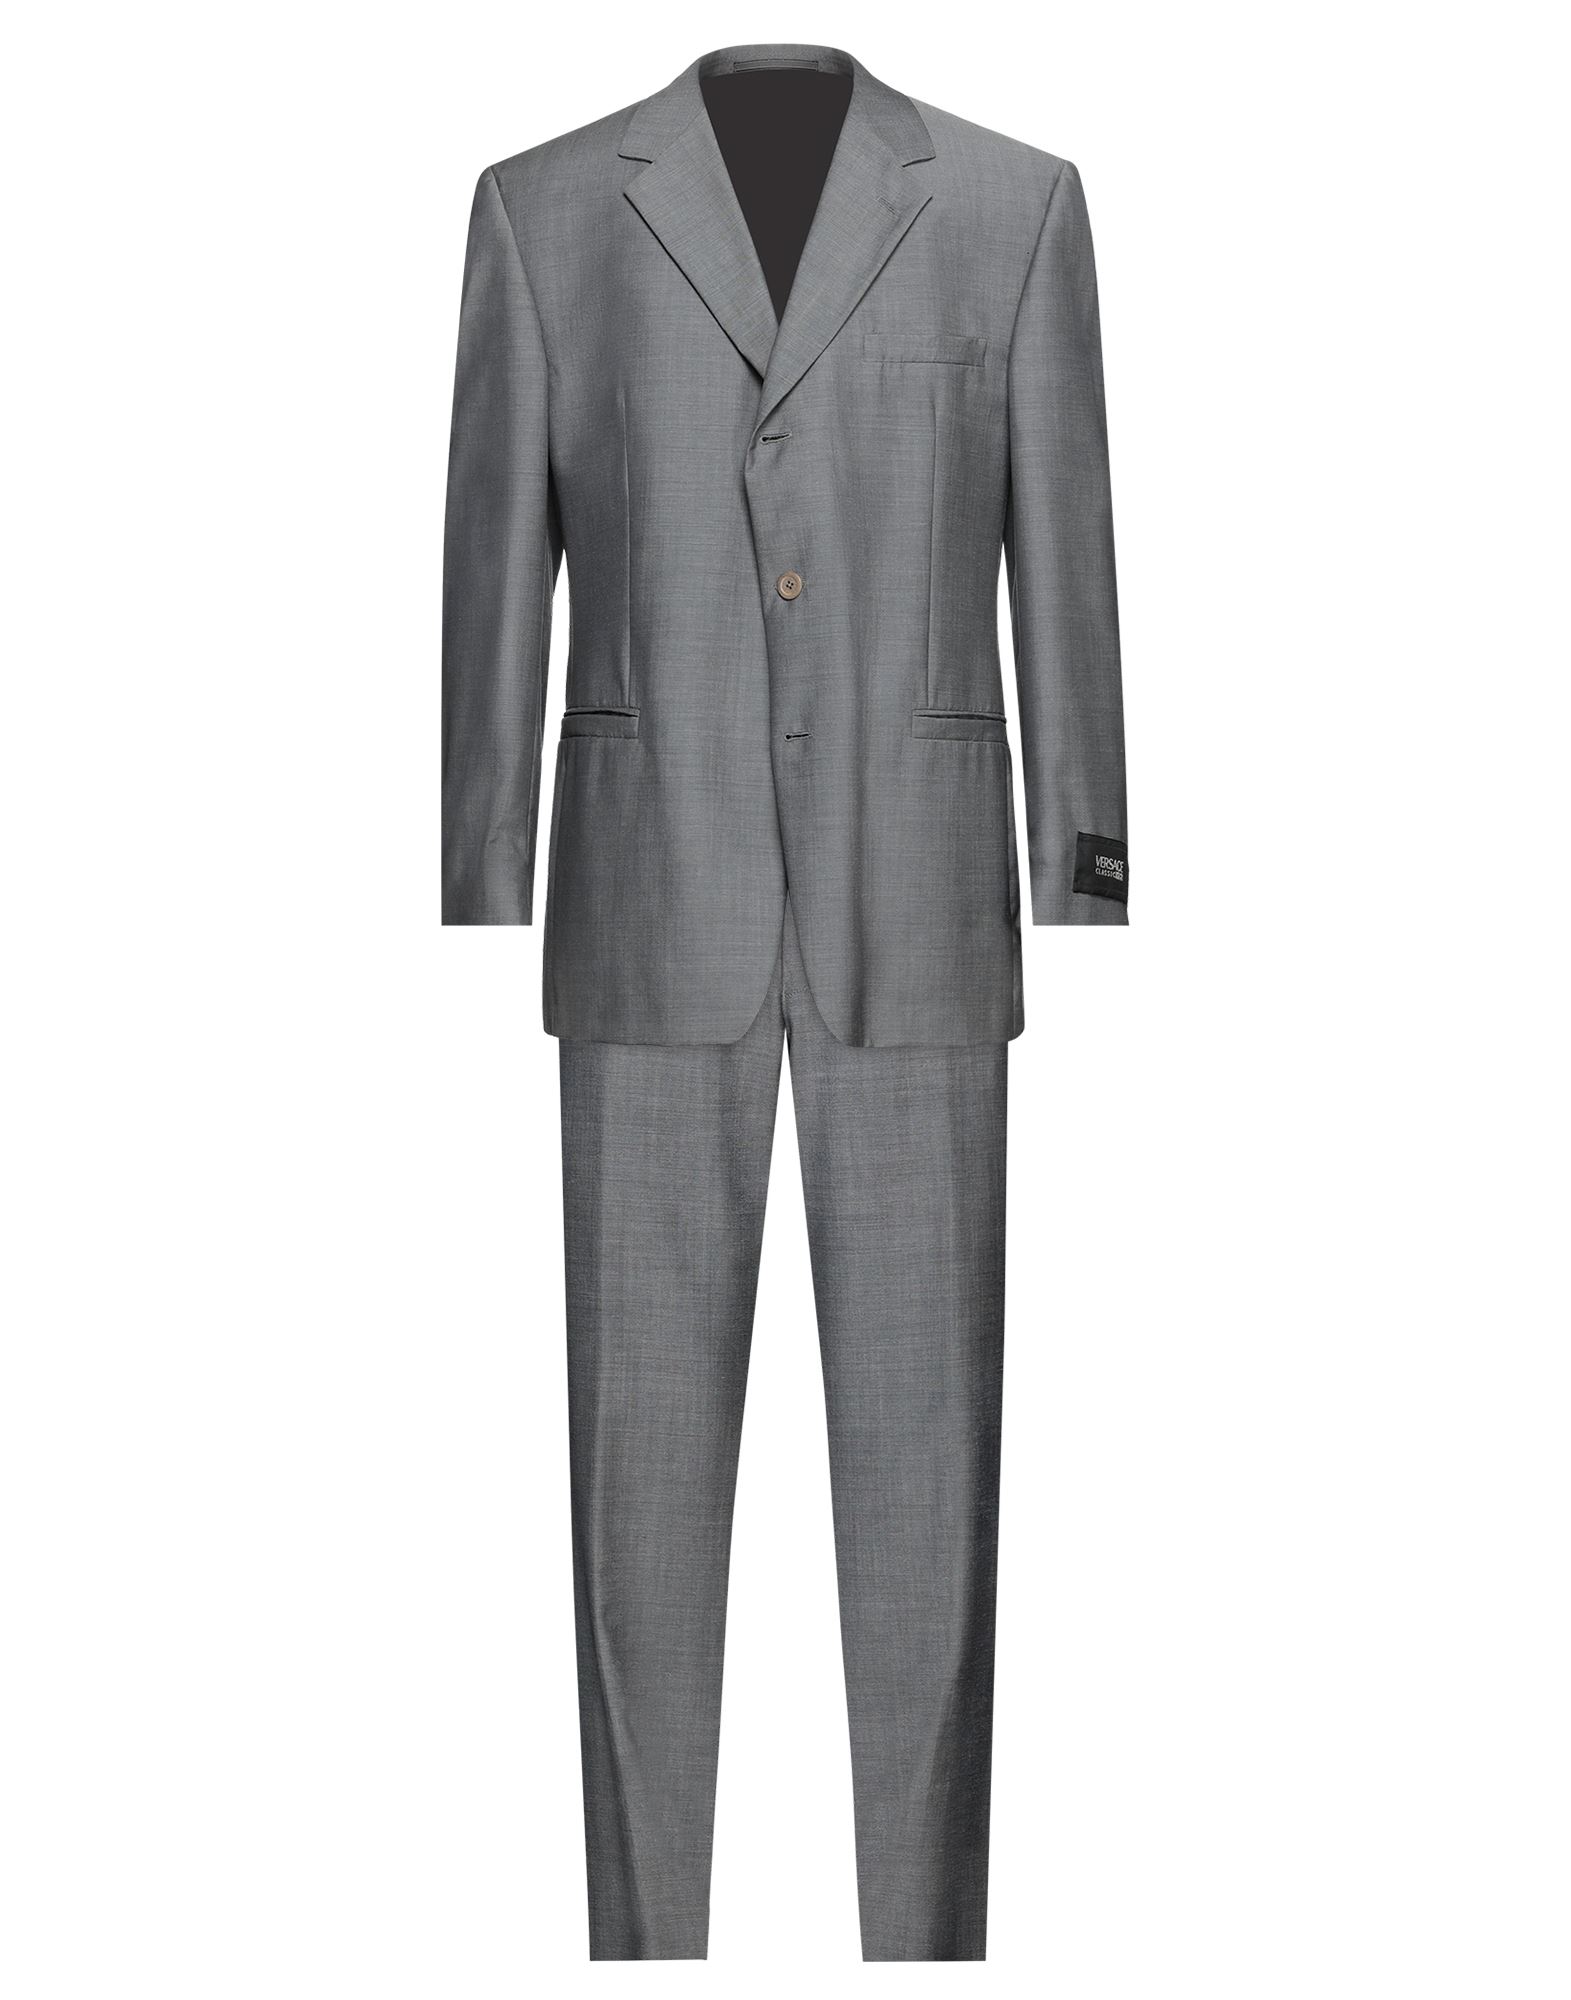 ヴェルサーチコレクションスーツ黒ストライプ セットアップ スーツ メンズ 高級品市場